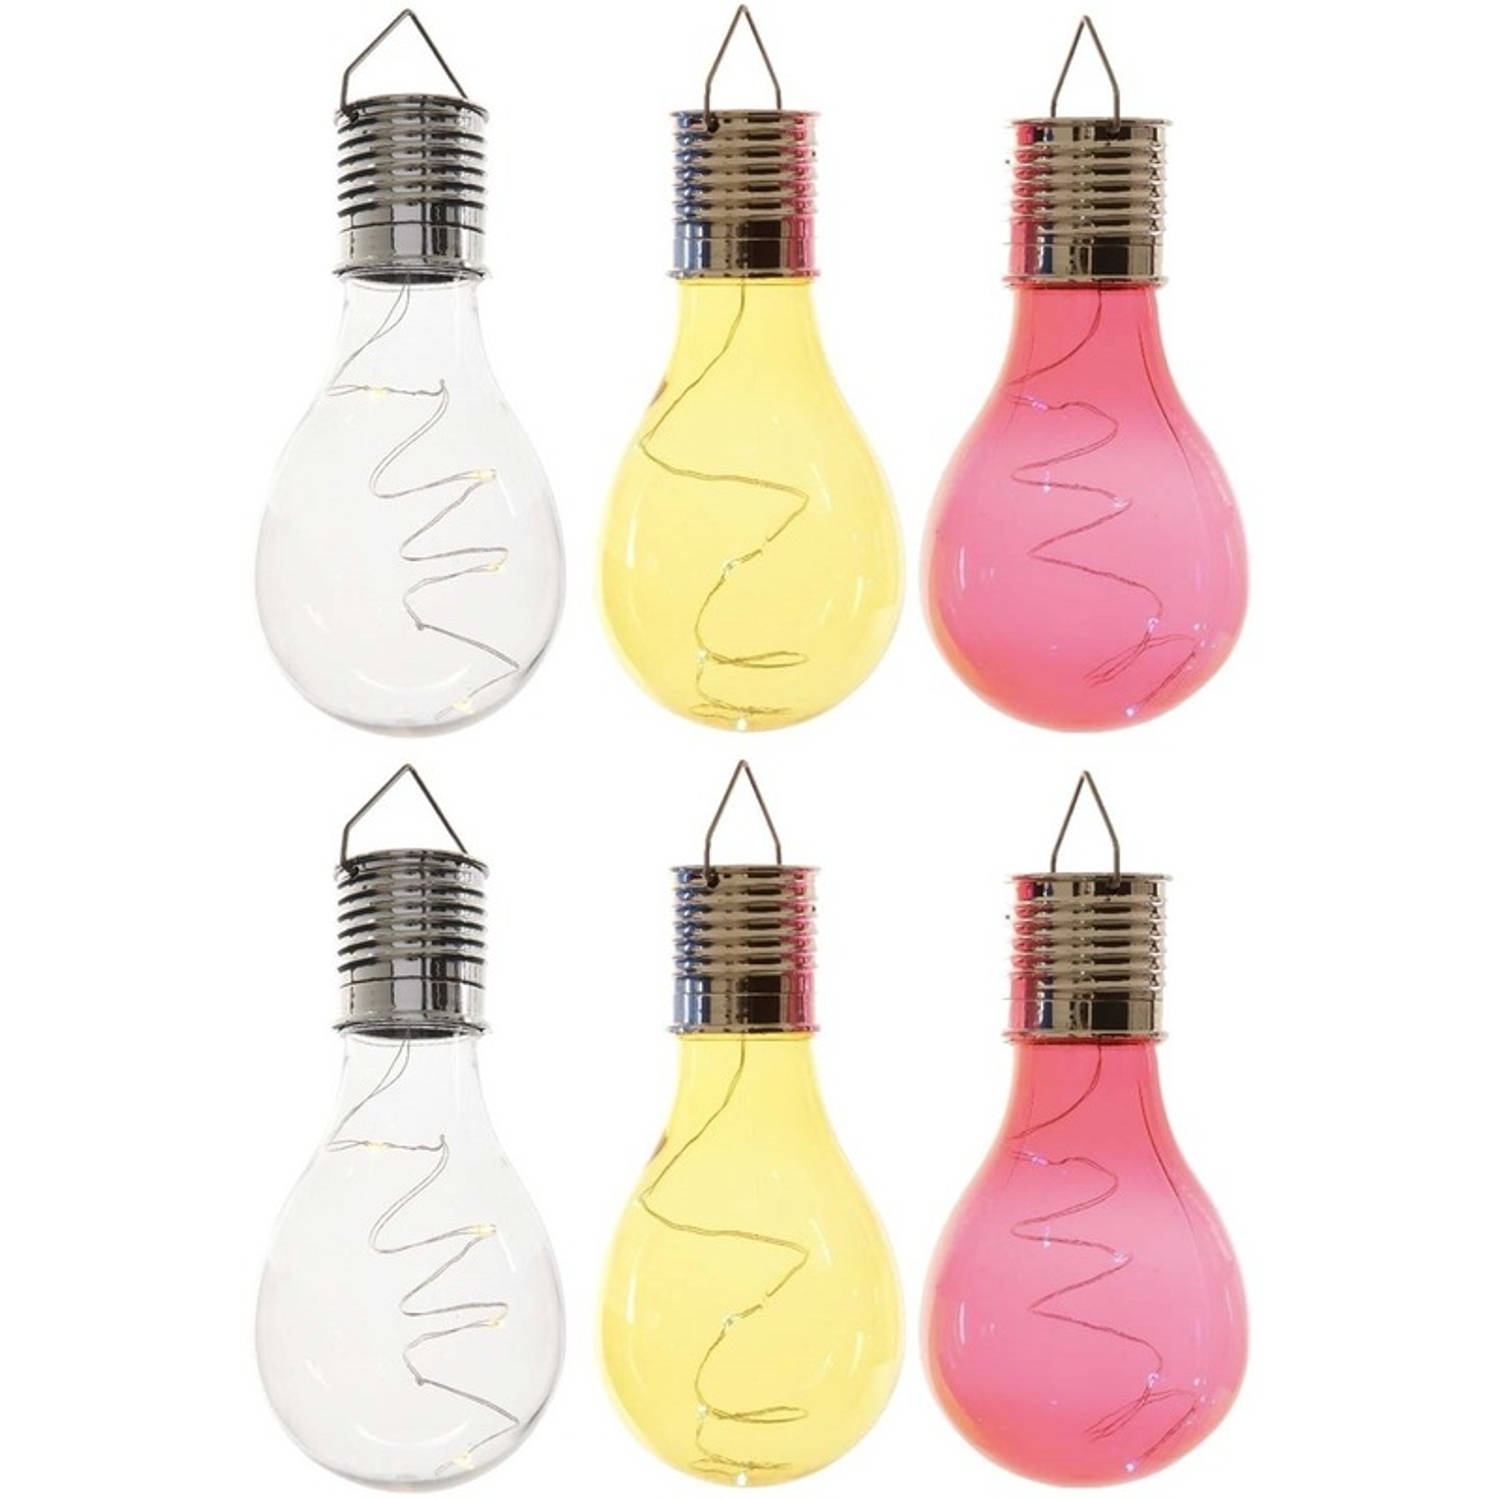 6x Buitenlampen/tuinlampen lampbolletjes/peertjes 14 cm transparant/geel/rood - Buitenverlichting